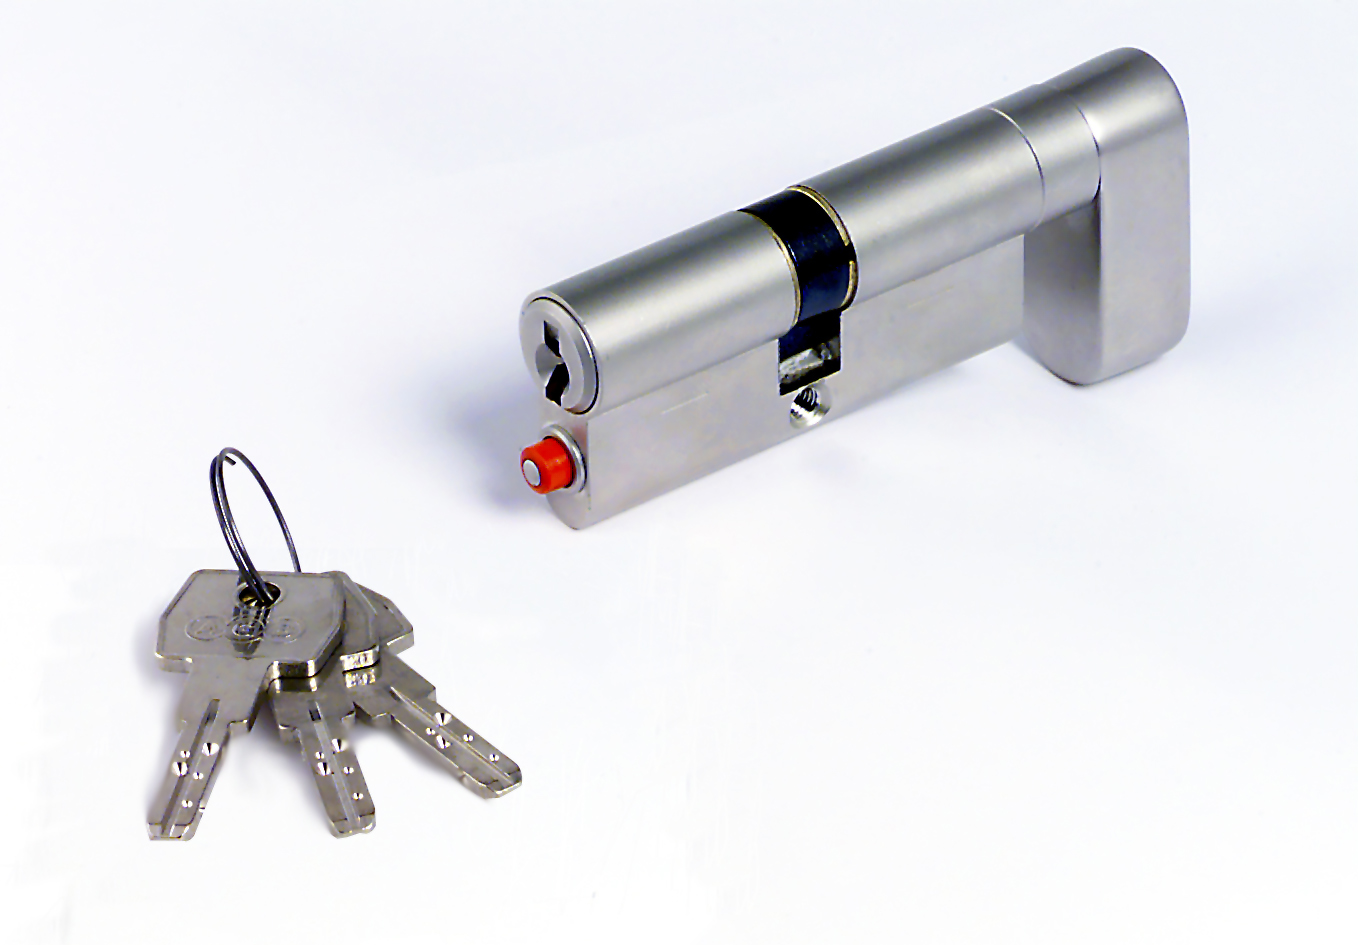 AGB -  Cilindro OPERA DQ - SL per porta tagliafuco a rotazione limitata con chiave e pomolo mk - a chiave maestra - col. NICHELATO OPACO - lunghezza 70 - misura 30-10-30